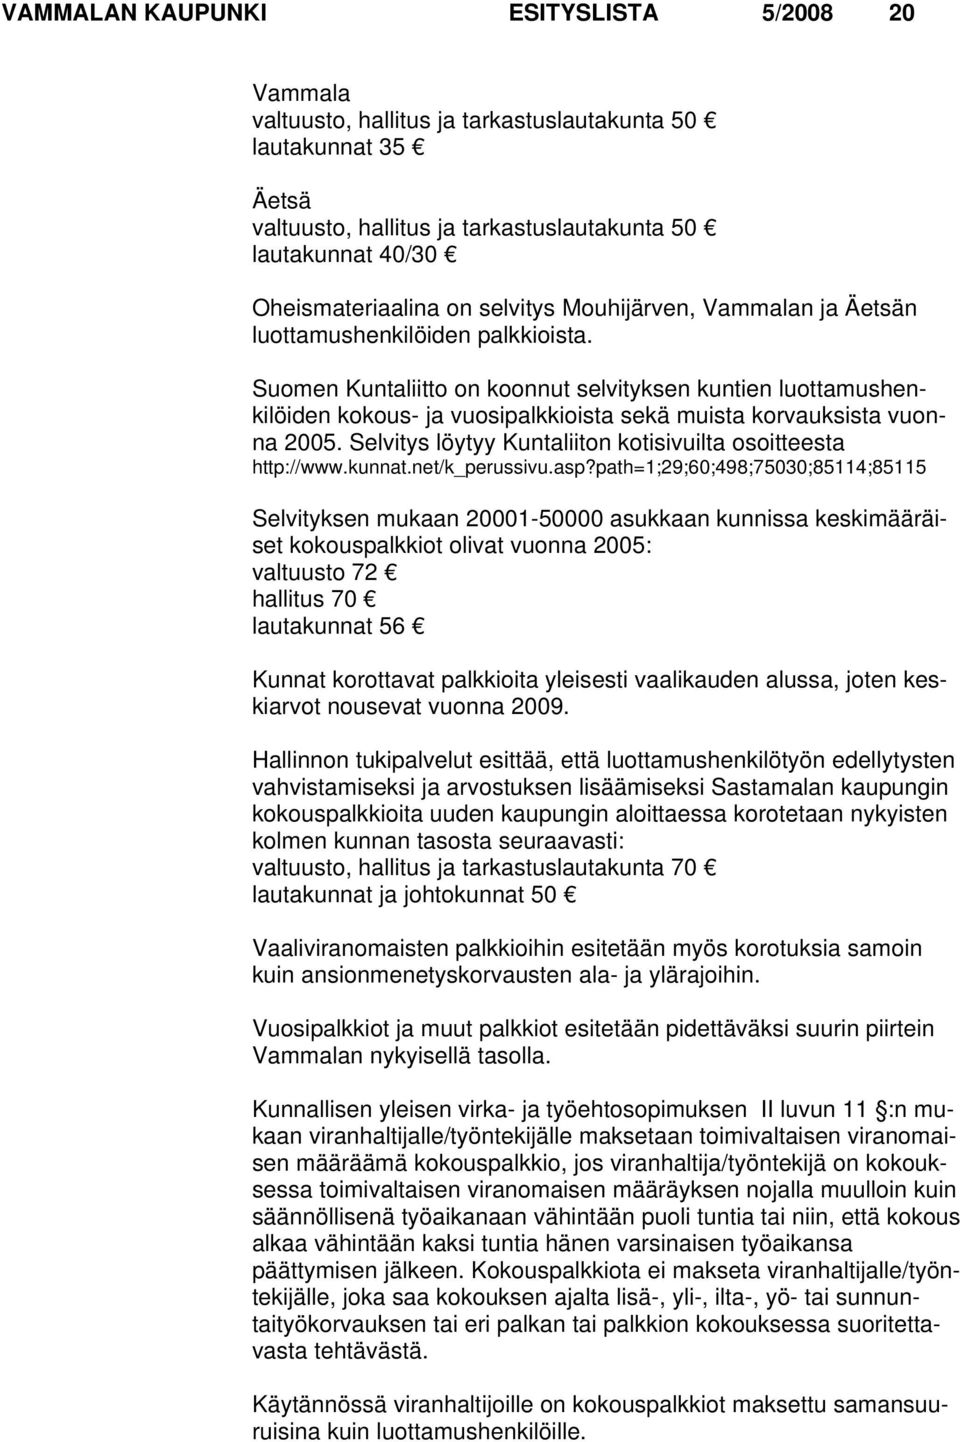 Suomen Kuntaliitto on koonnut selvityksen kuntien luottamushenkilöiden kokous- ja vuosipalkkioista sekä muista korvauksista vuonna 2005.